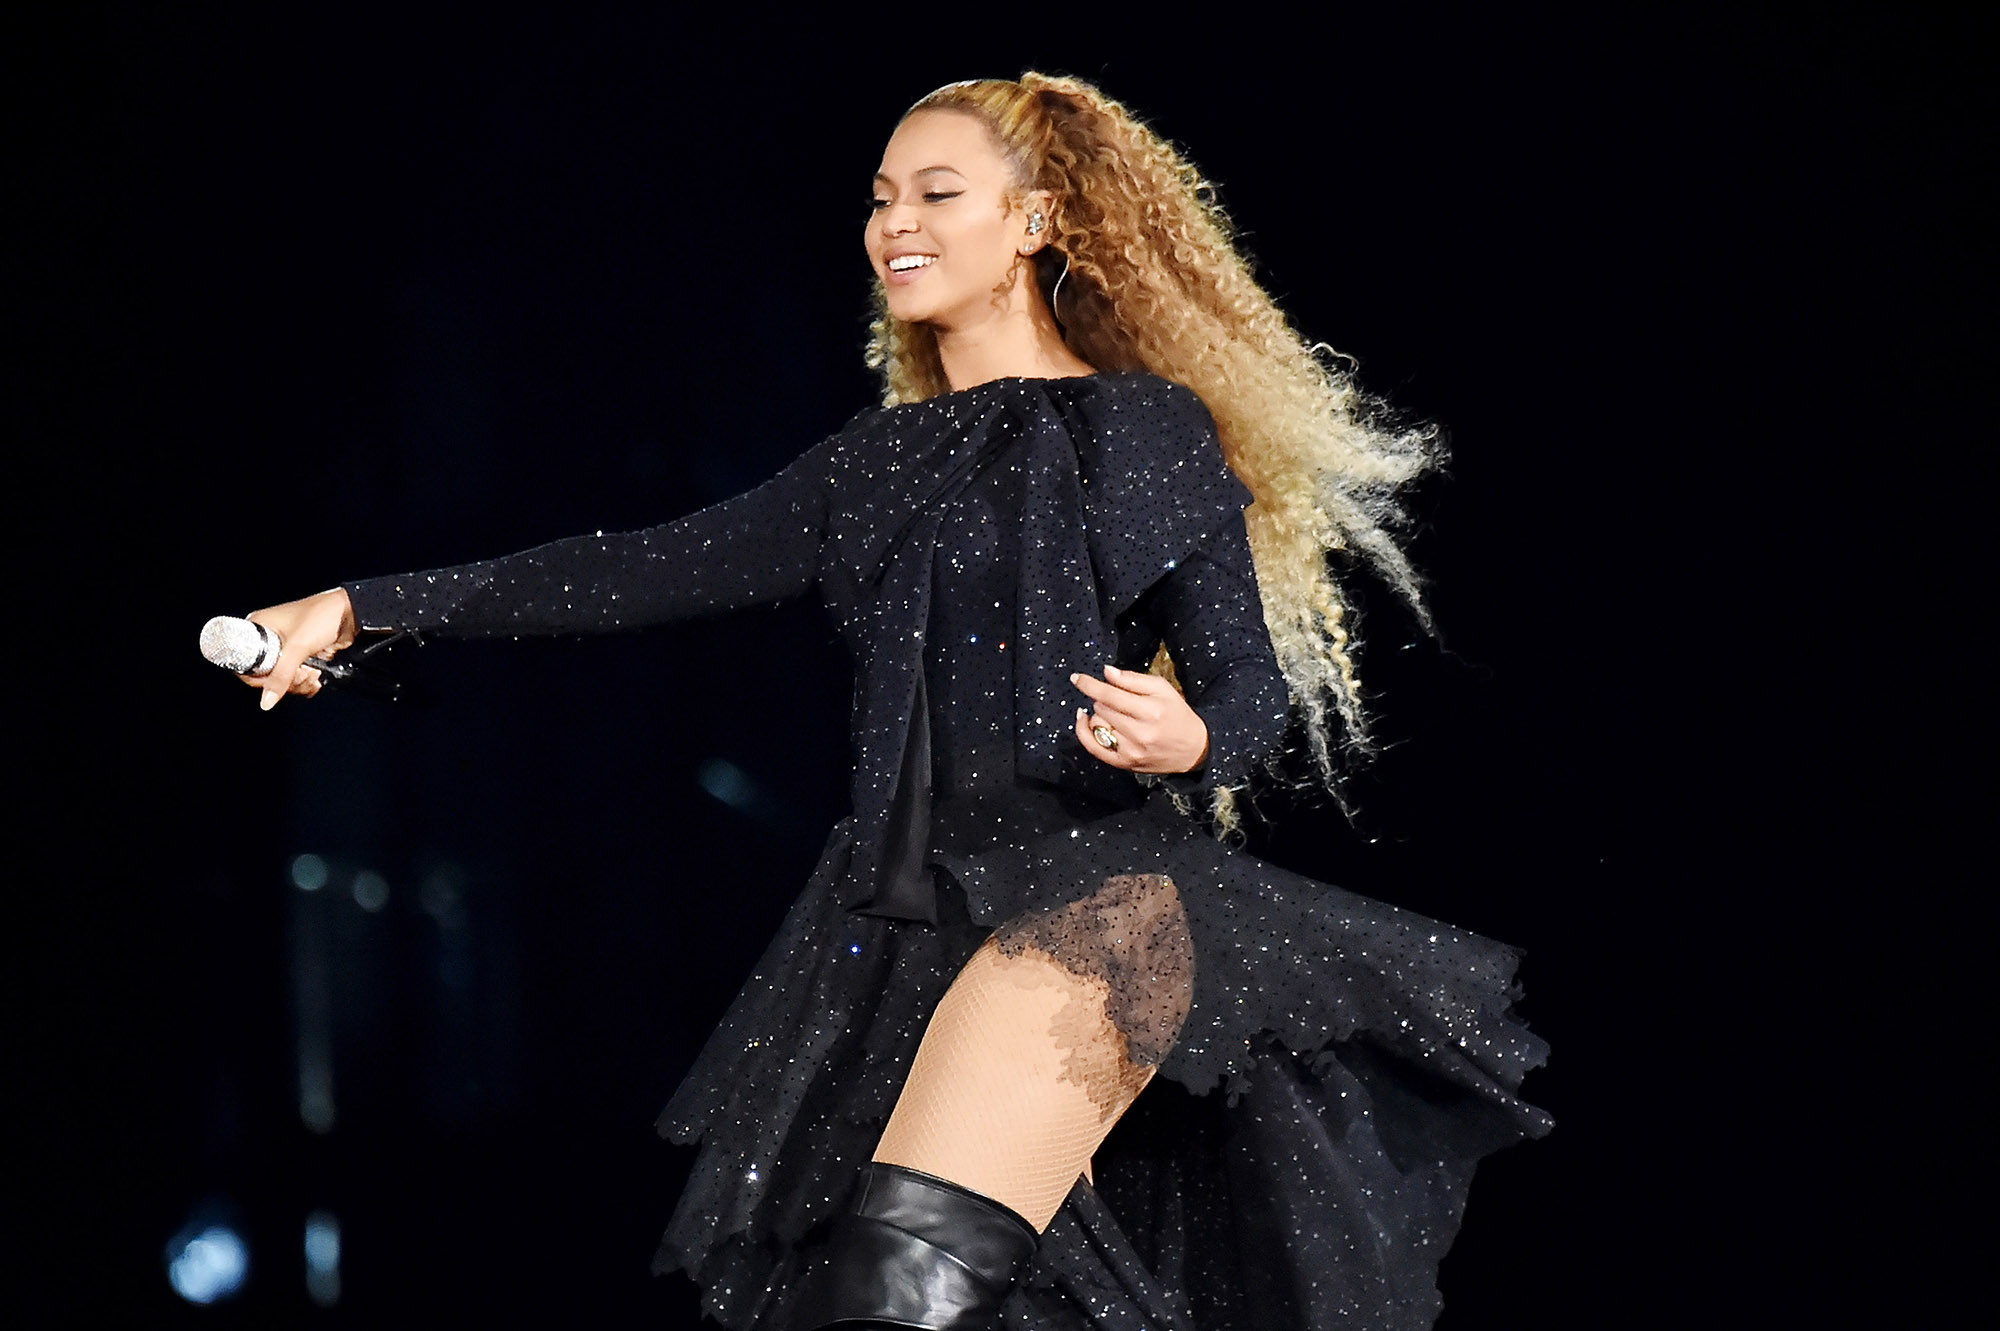 CL Akui Beyonce Beri Dukungan Saat Alami Masa Sulit